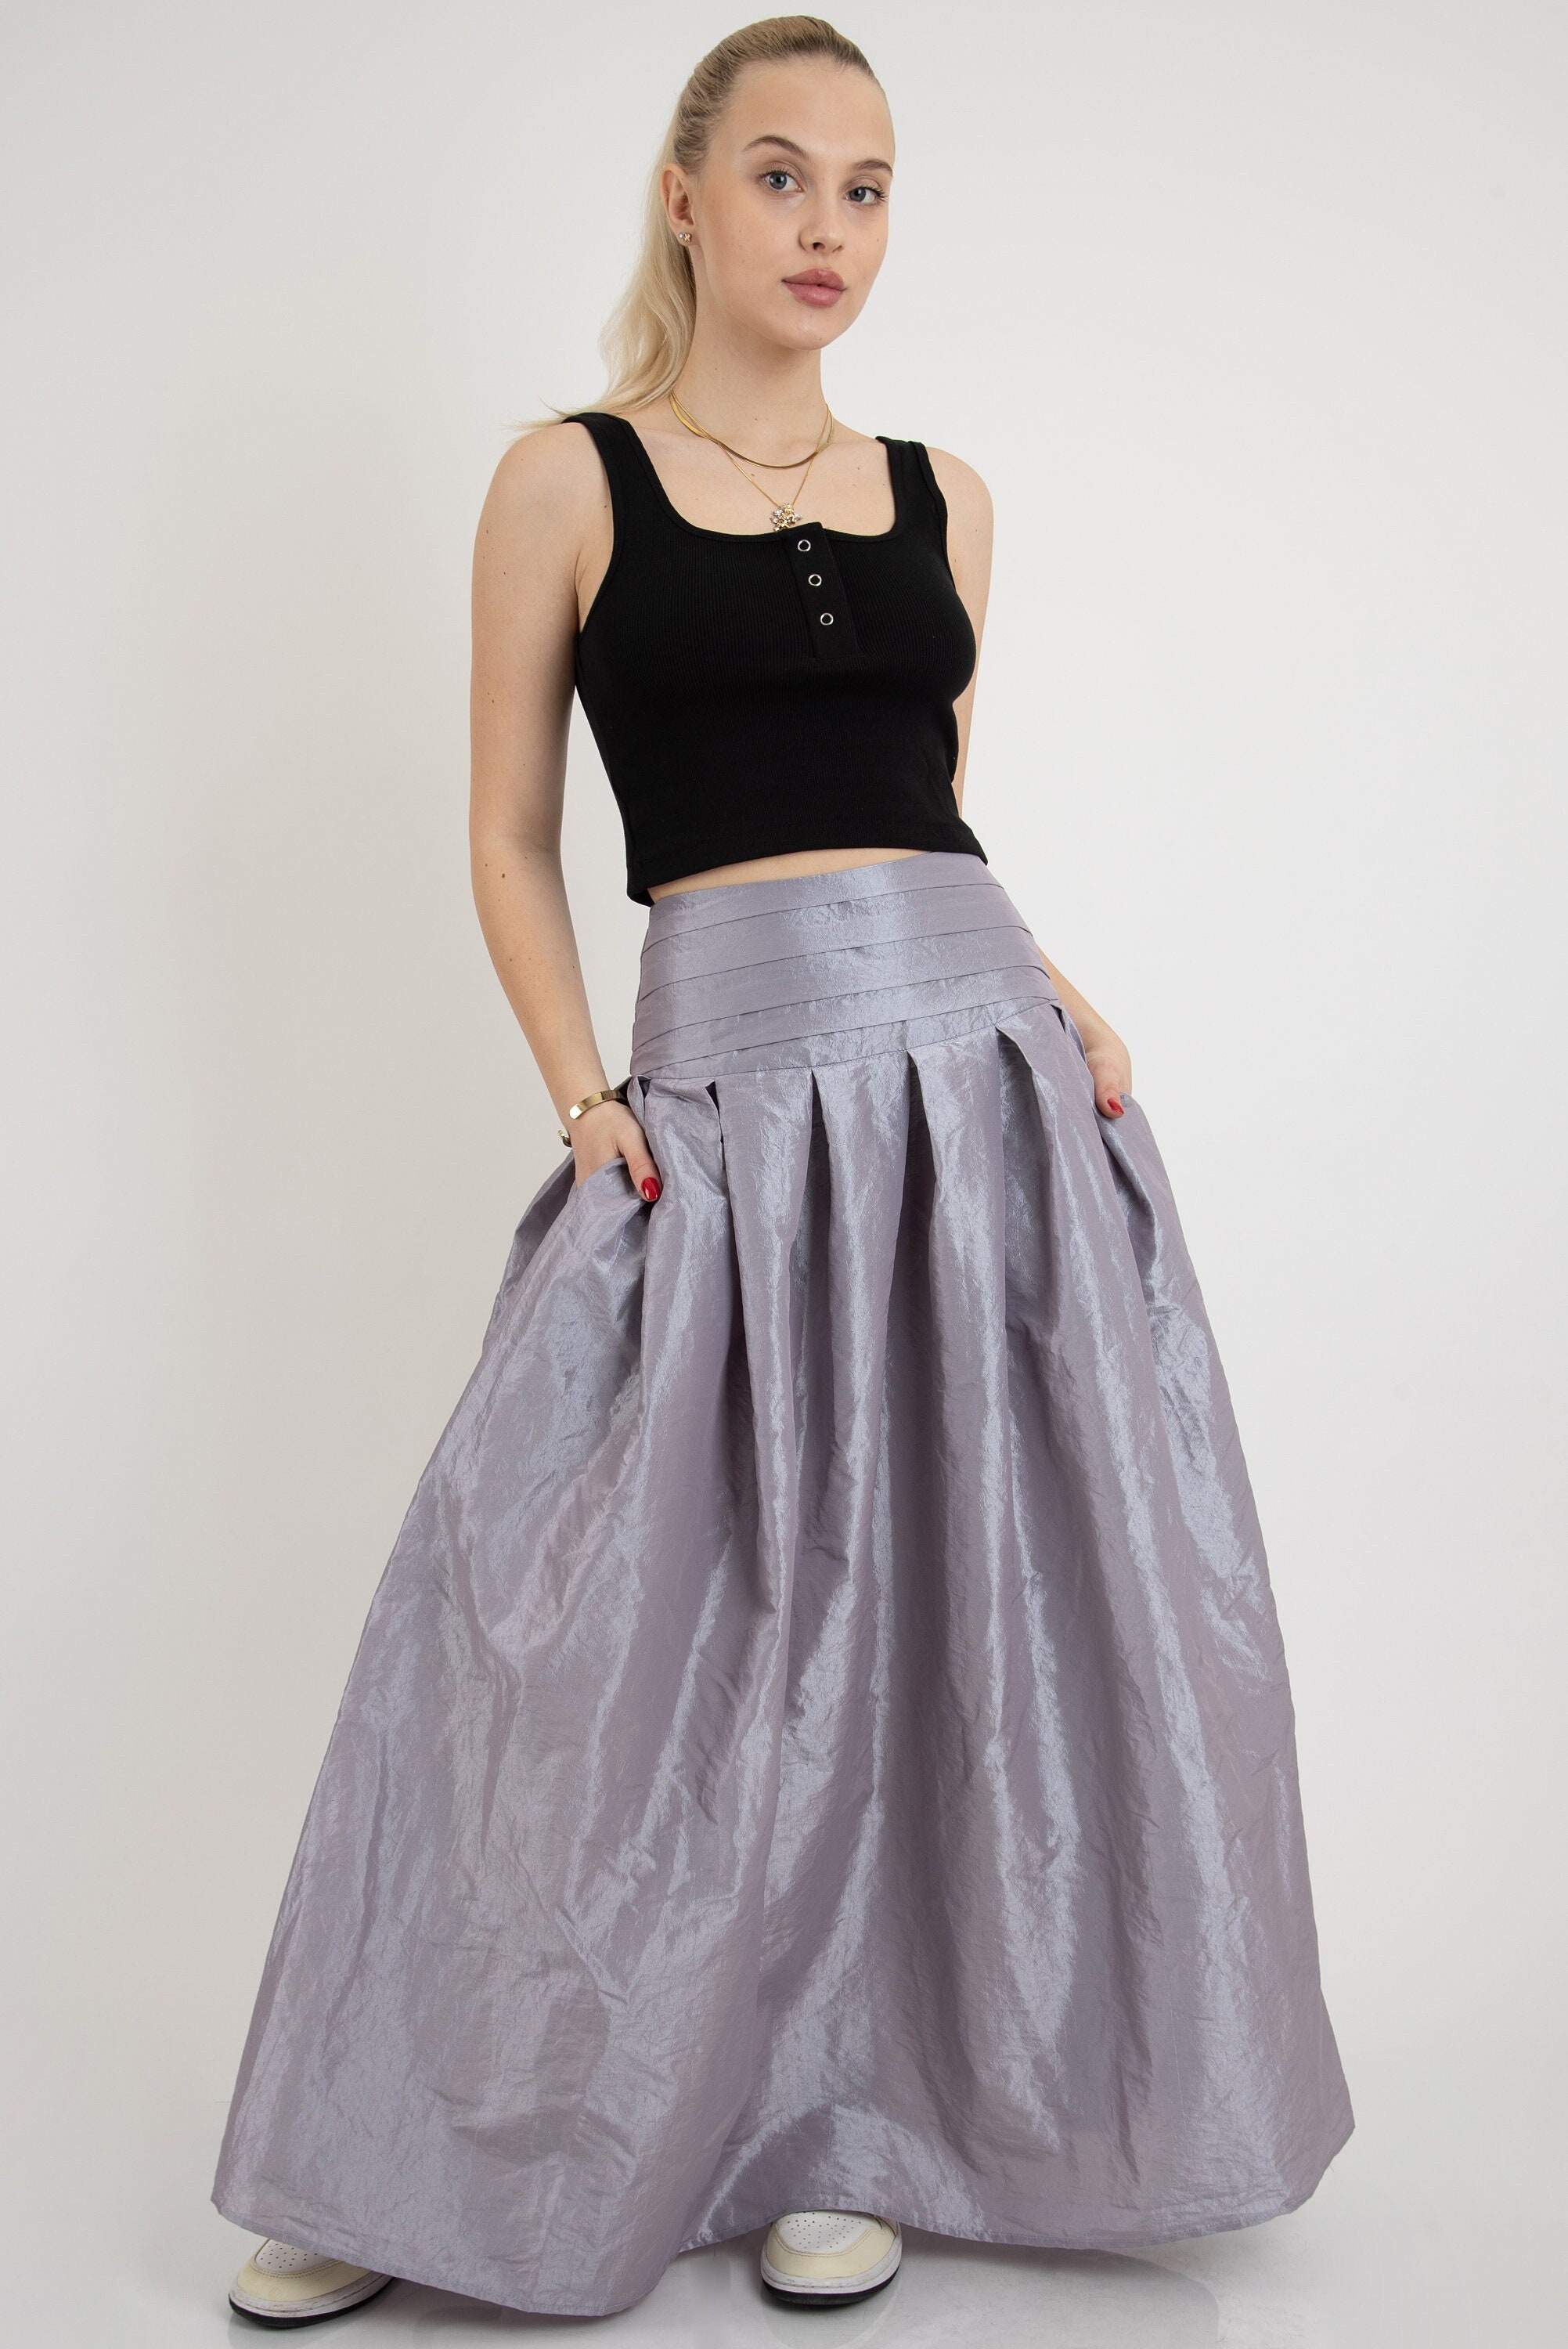 Formal Long Maxi Skirt, High Waisted Skirt, Wedding Skirt, Bridal Skirt,  Blue Taffeta Skirt, Asymmetric Skirt 